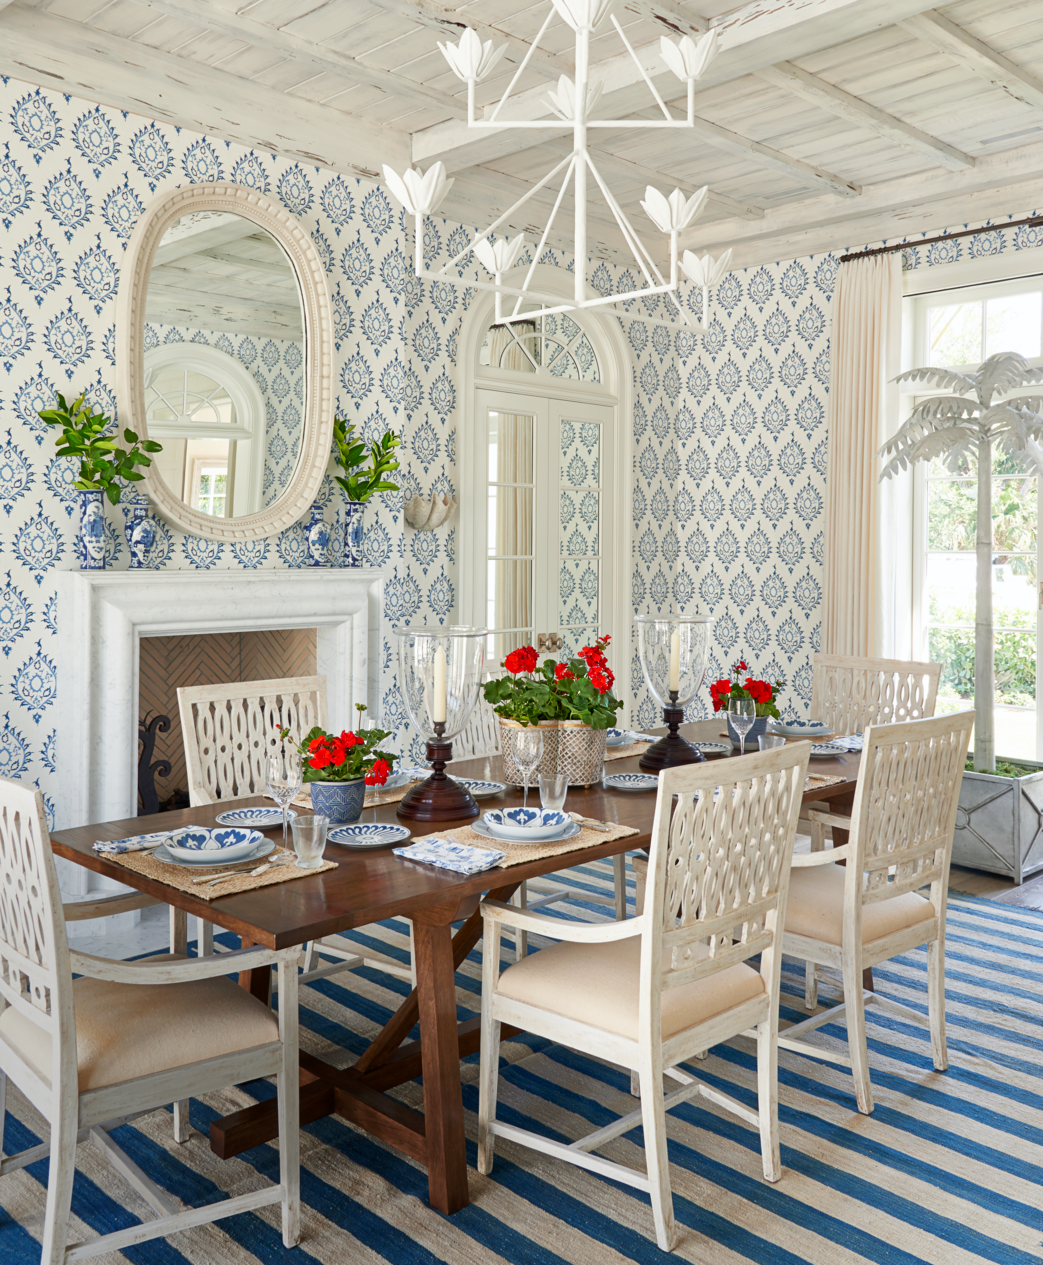 Beautiful Dining Room Wallpaper Ideas, Dining Room Wallcovering Ideas